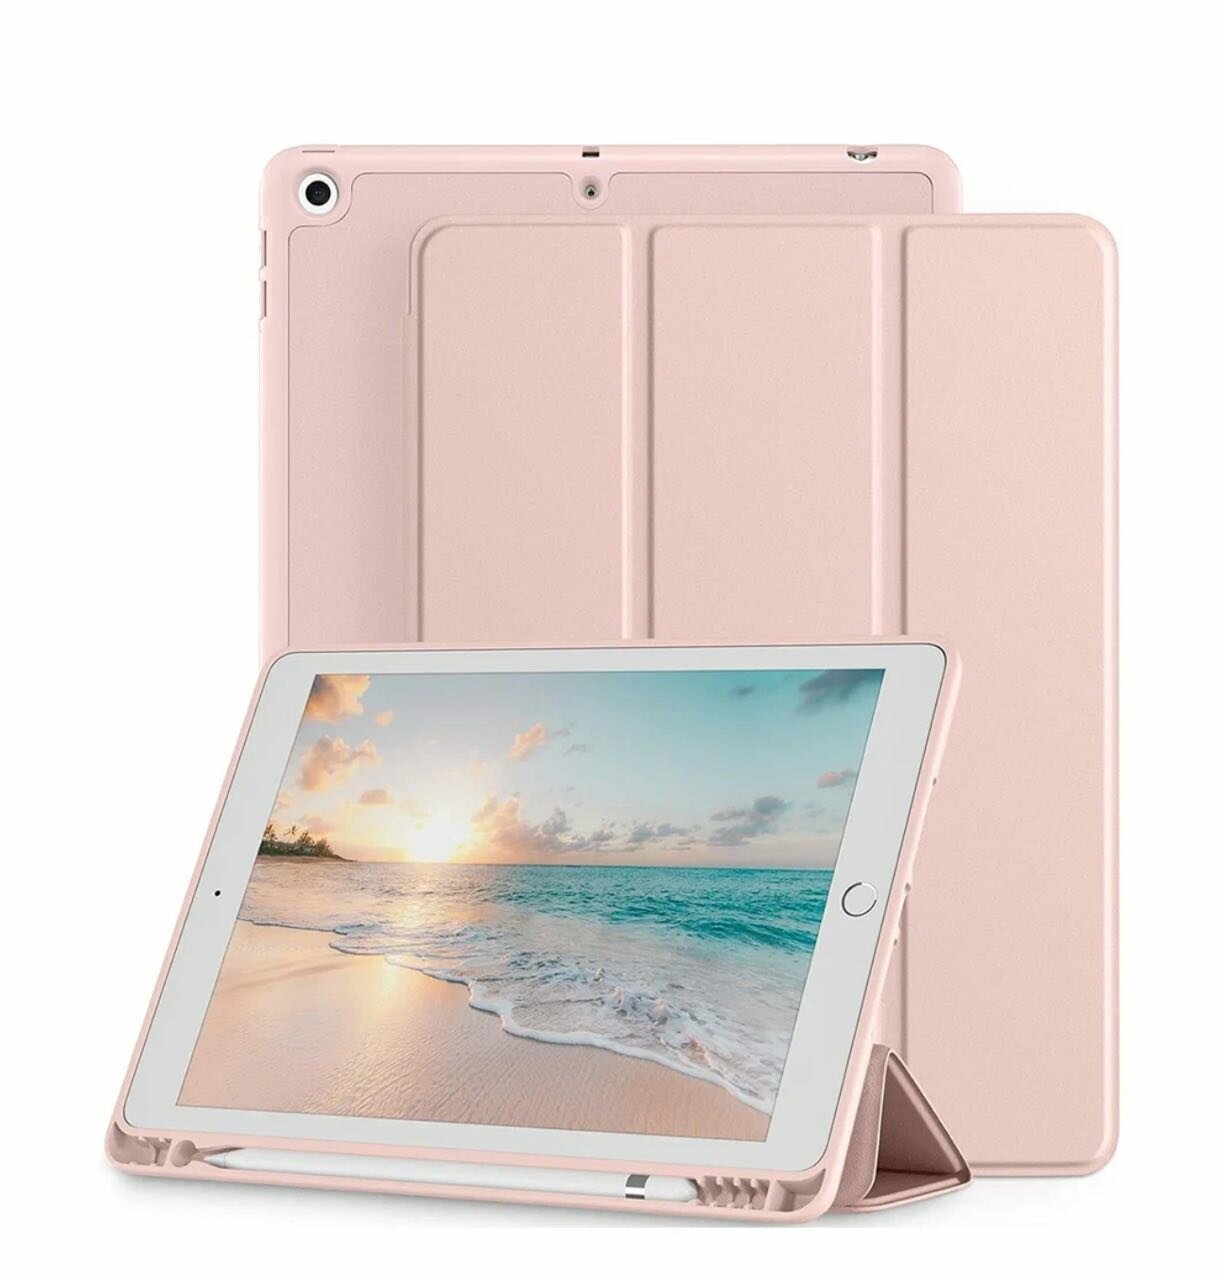 Чехол книжка для Apple iPad New 2017-2018 (9.7), с отделением для стилуса, автоблокировка экрана, трансформируется в подставку, цвет: розовый, пудровый